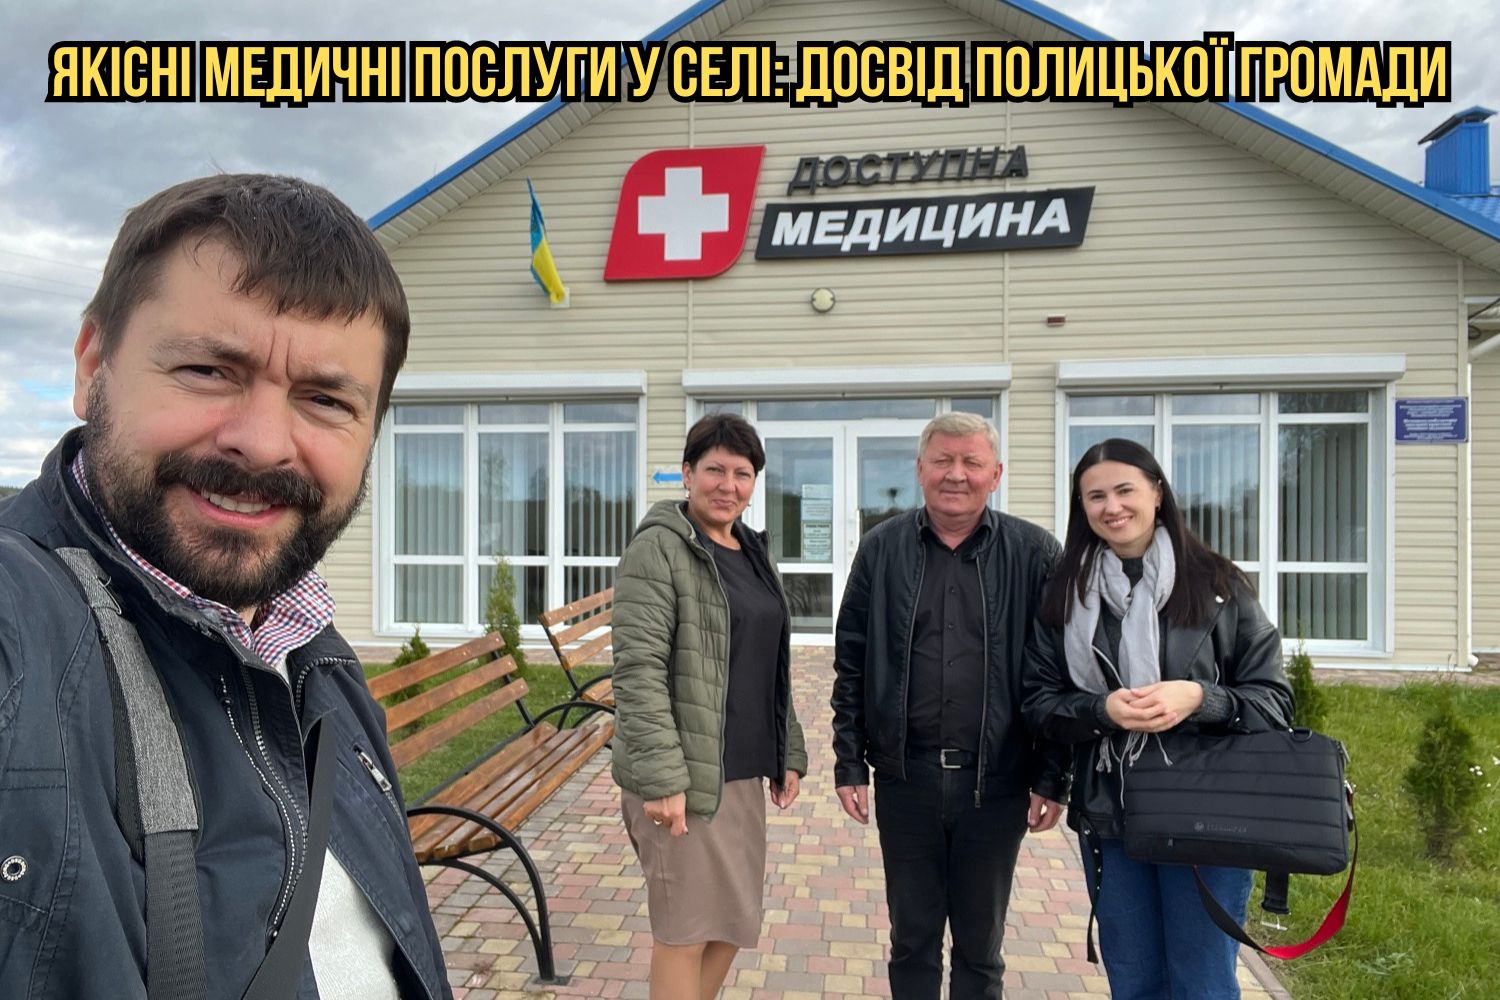 Якісні медичні послуги у селі: досвід Полицької громади